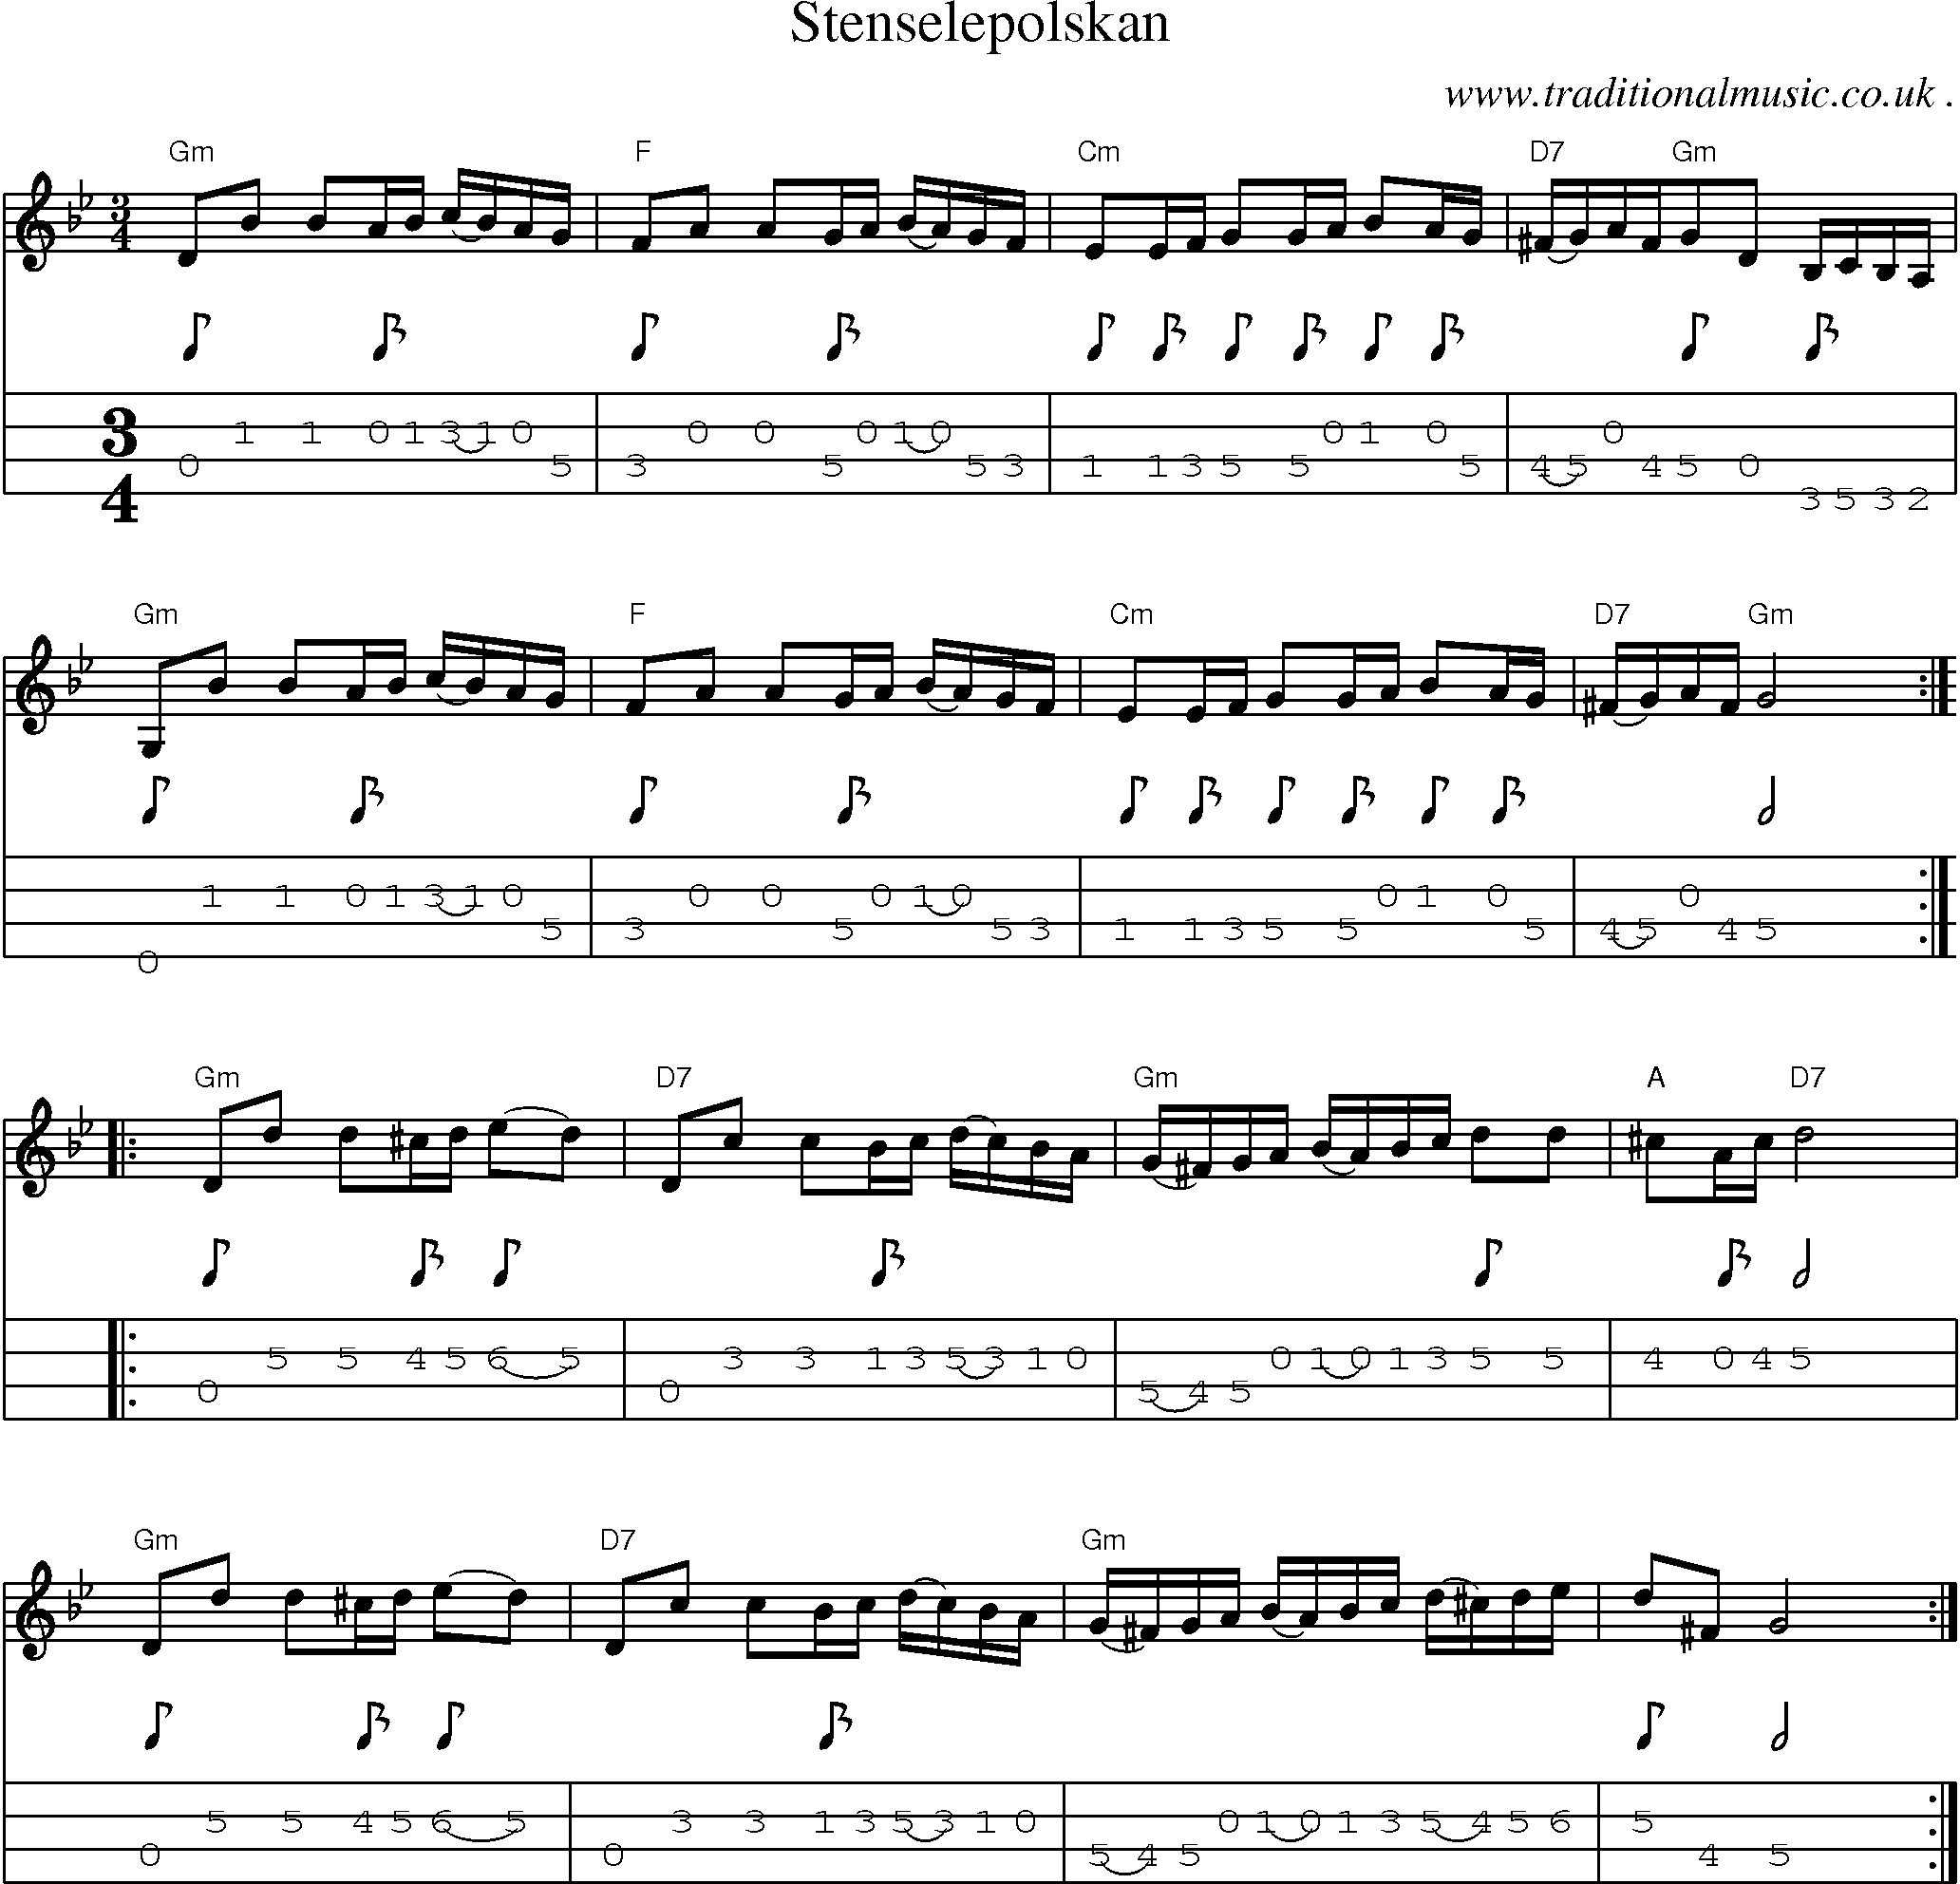 Sheet-Music and Mandolin Tabs for Stenselepolskan